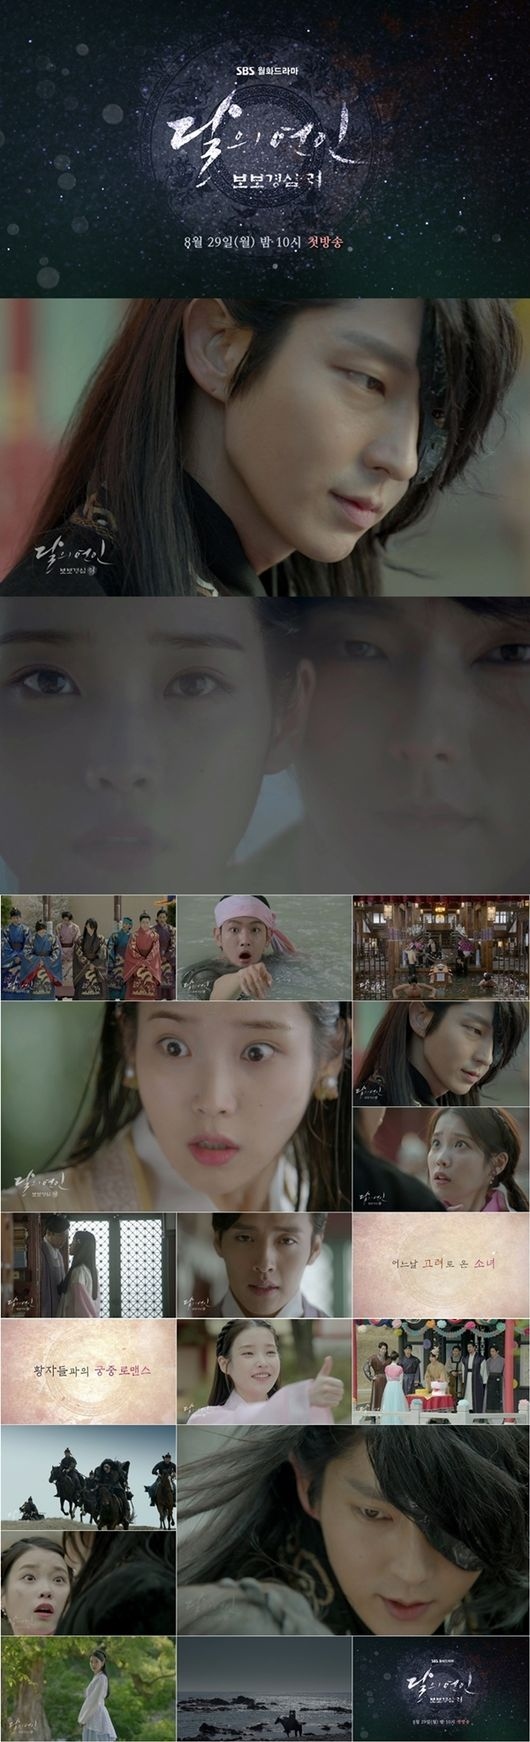 麗＜レイ＞～花萌ゆる8人の皇子たち」予告映像第2弾が公開…EXO